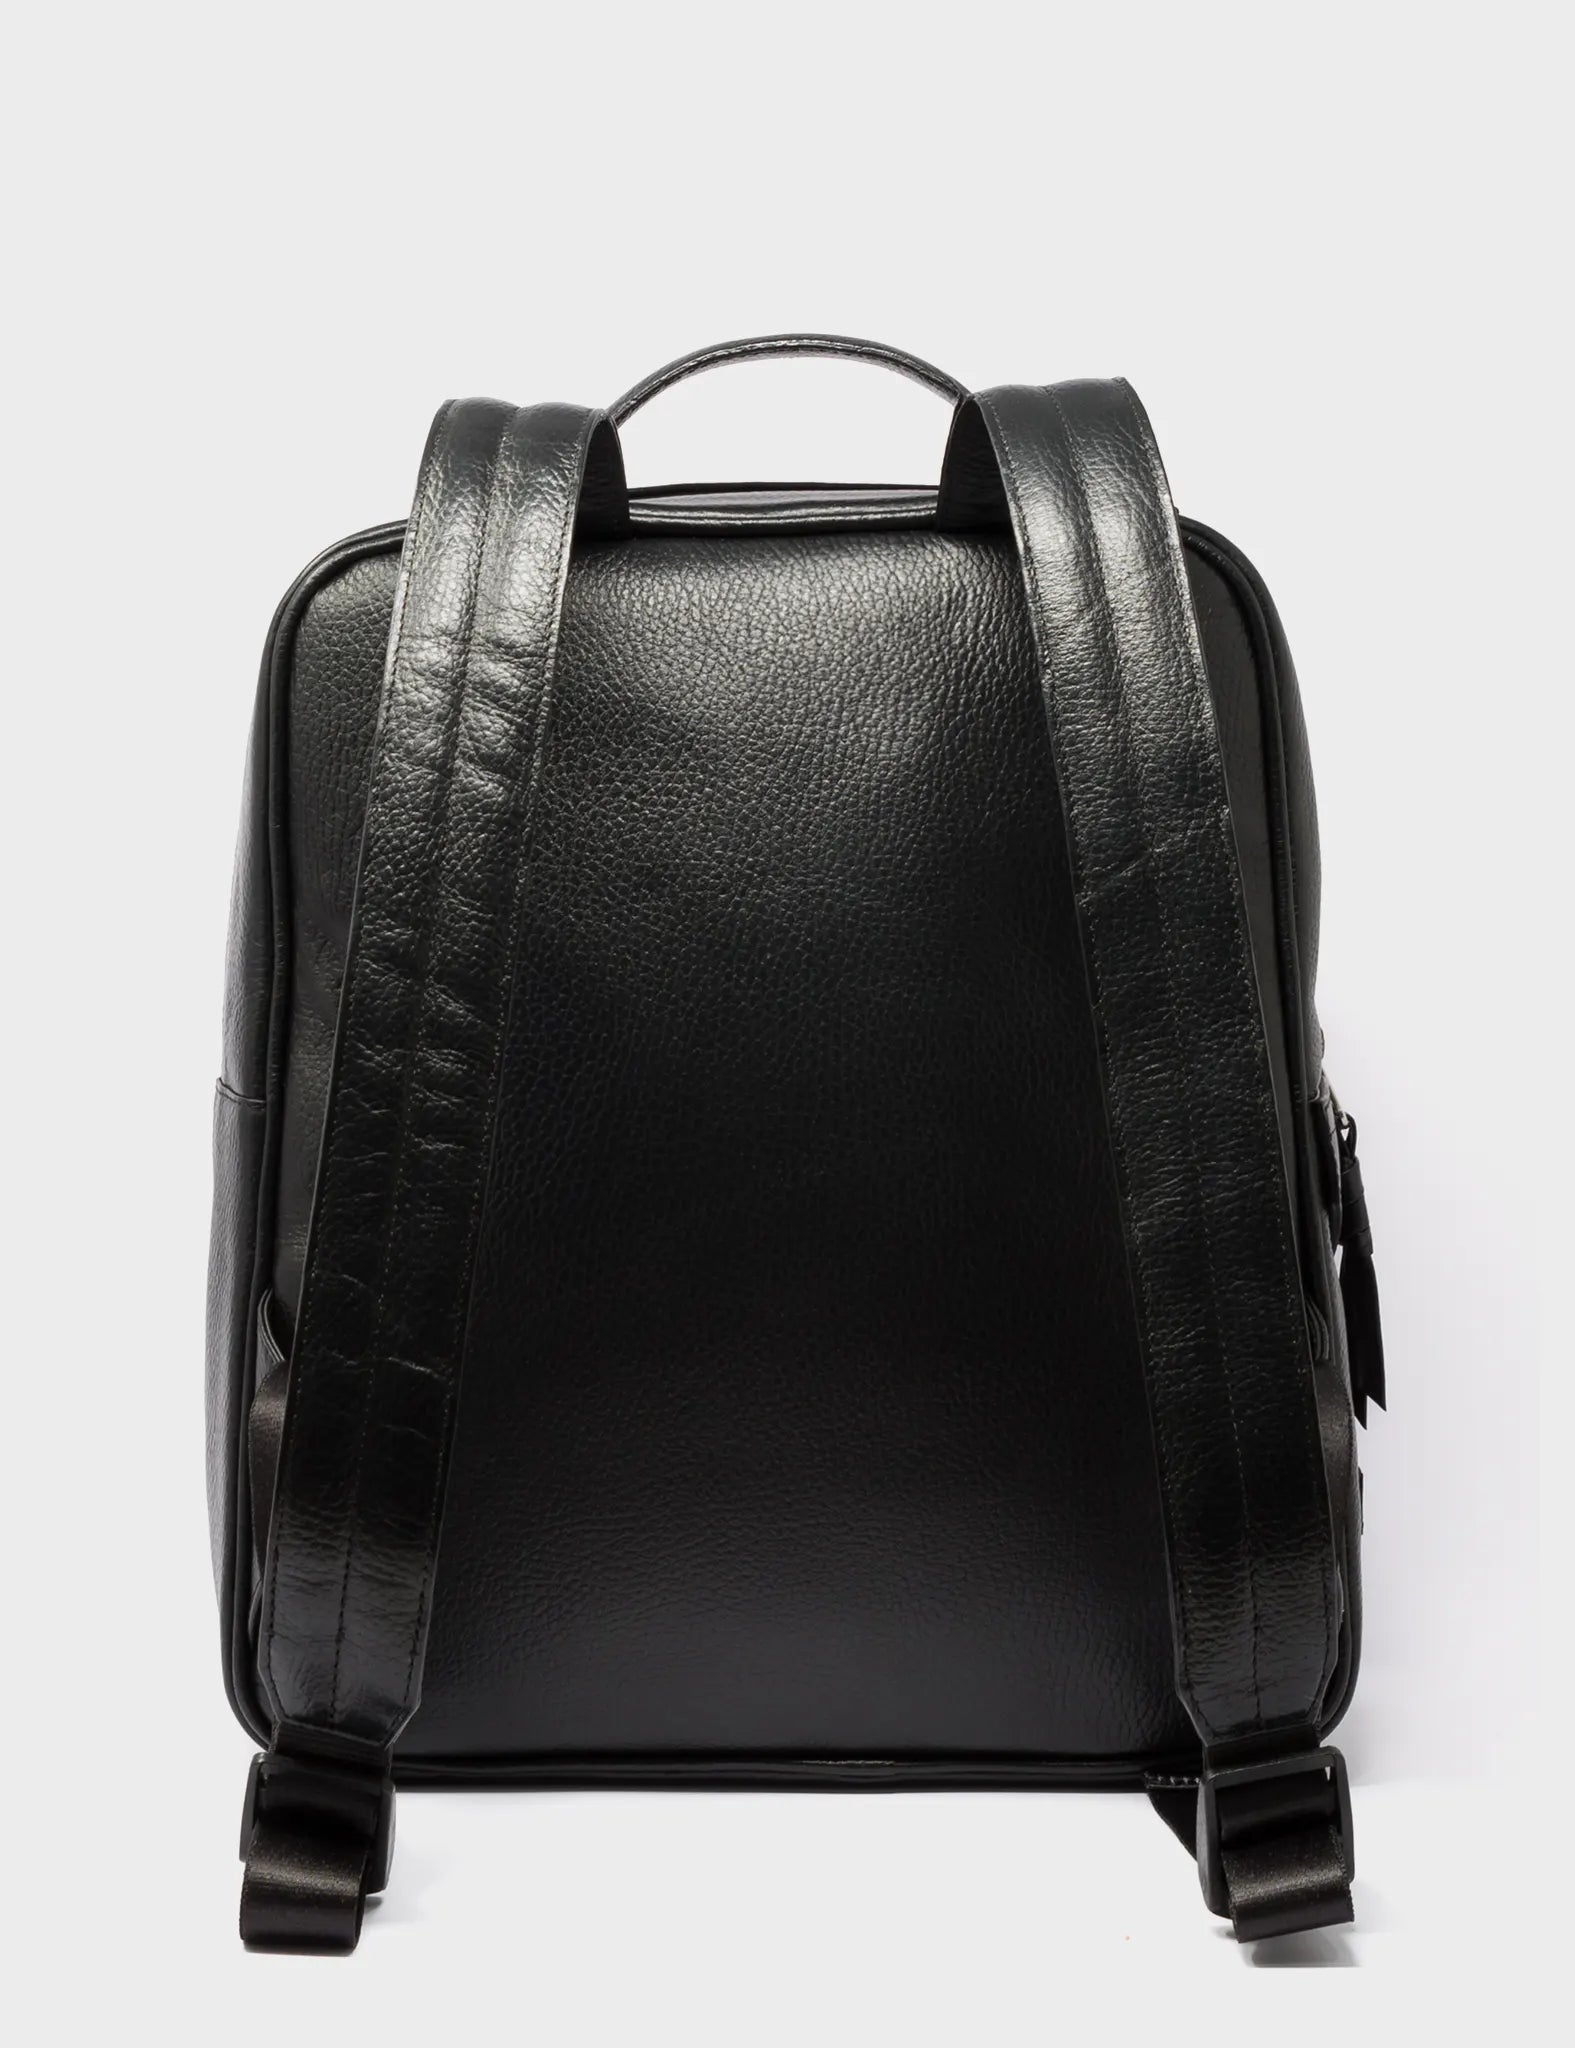 Black Leather Backpack Medium - Tiger and Snake Print - Back 